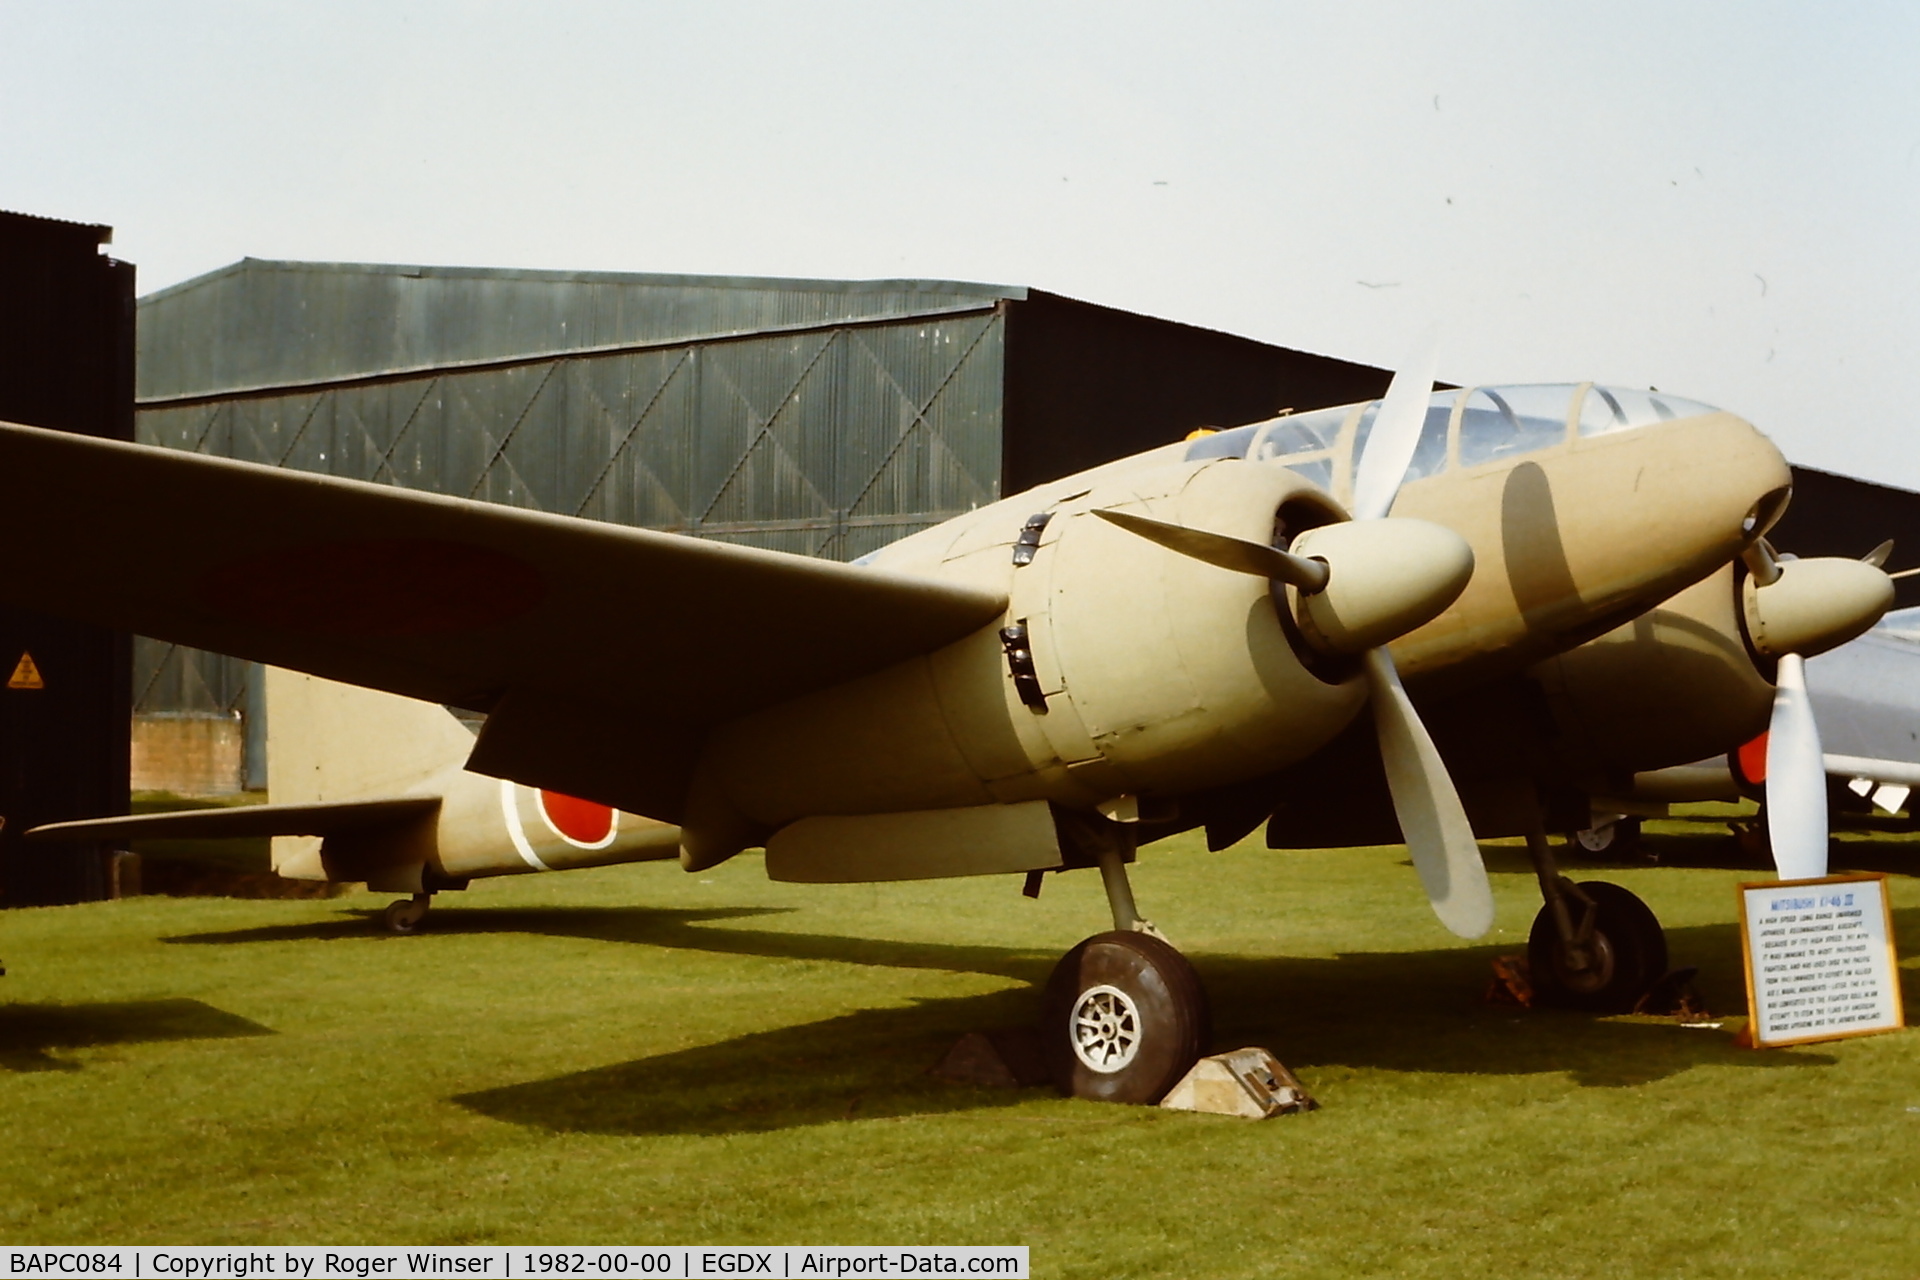 BAPC084, 1932 Mitsubishi Ki 46-III Dinah C/N 5439, Maintenance airframe 8484M/BAPC.84/5439 seen when part of the Historic Aircraft Collection at RAF St Athan in 1982.